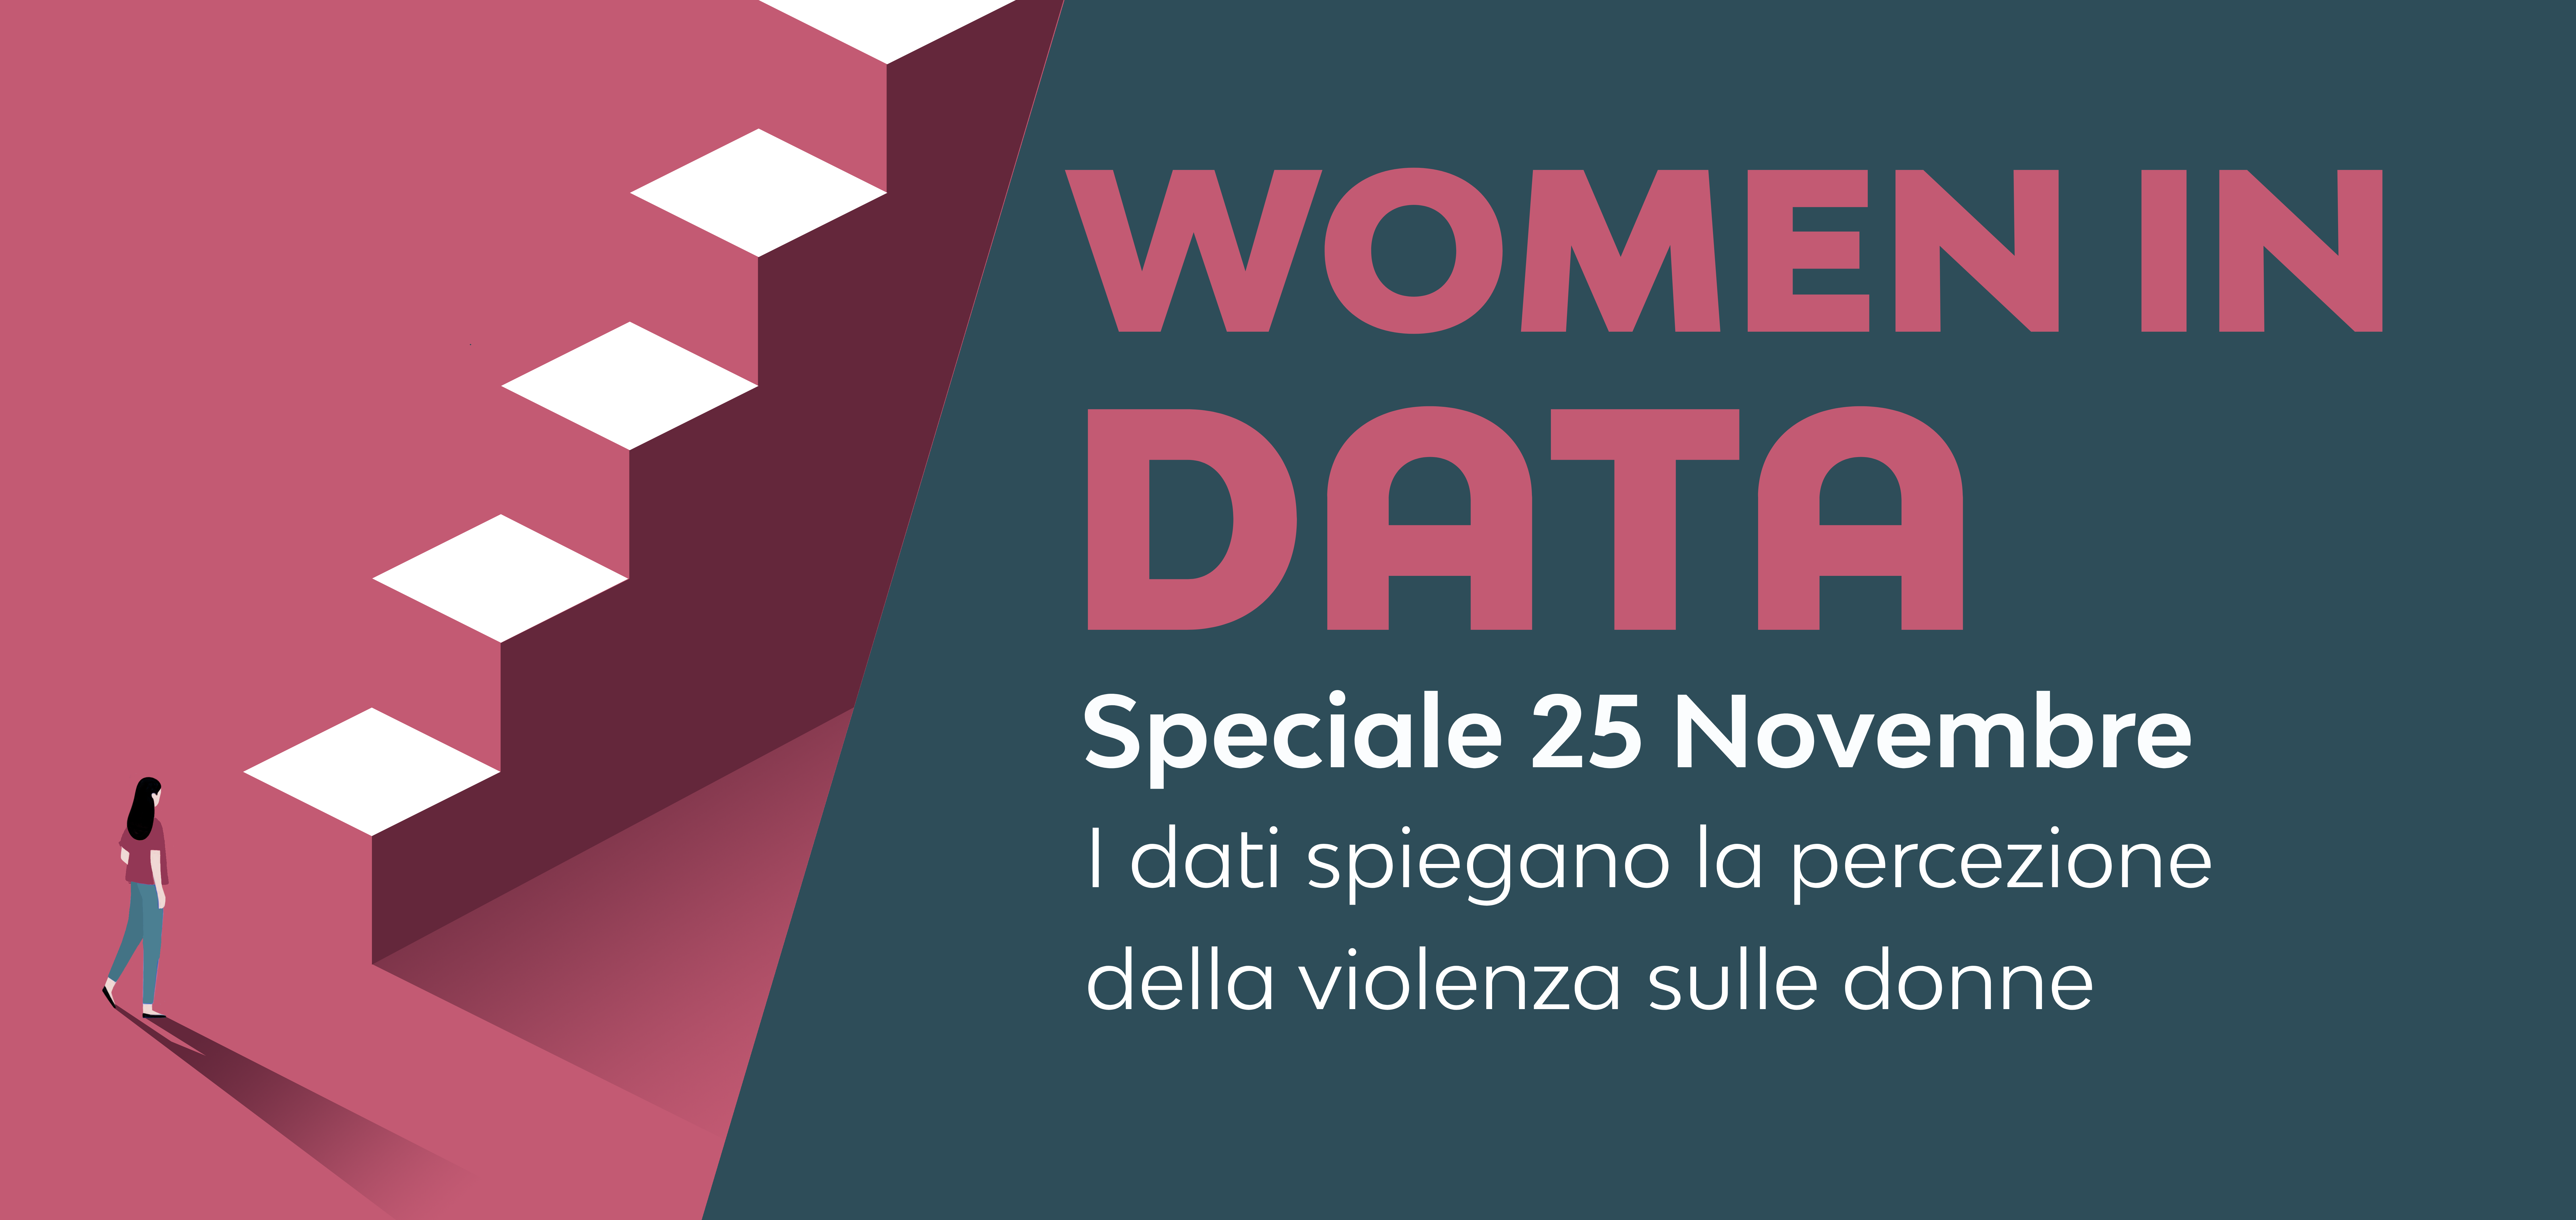 WOMEN IN DATA | Speciale 25 Novembre: Violenza contro le donne